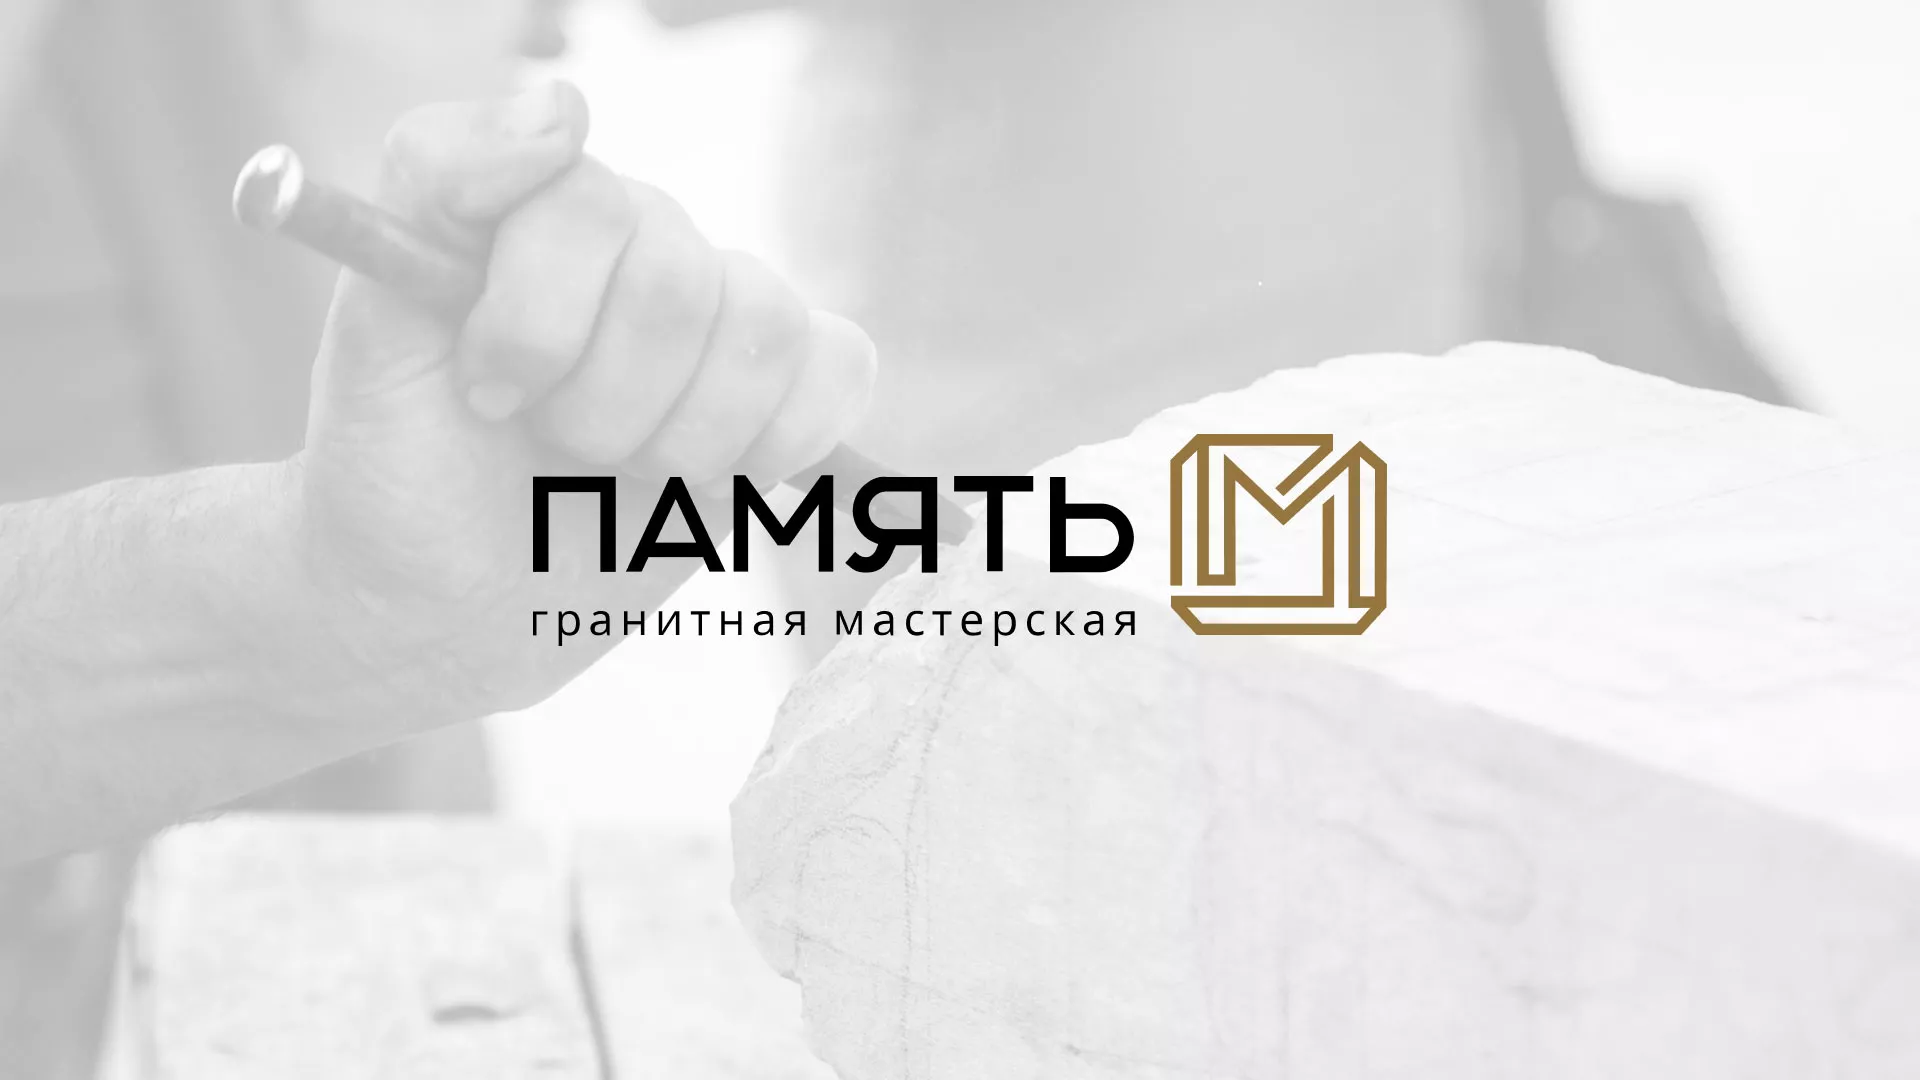 Разработка логотипа и сайта компании «Память-М» в Вёшках